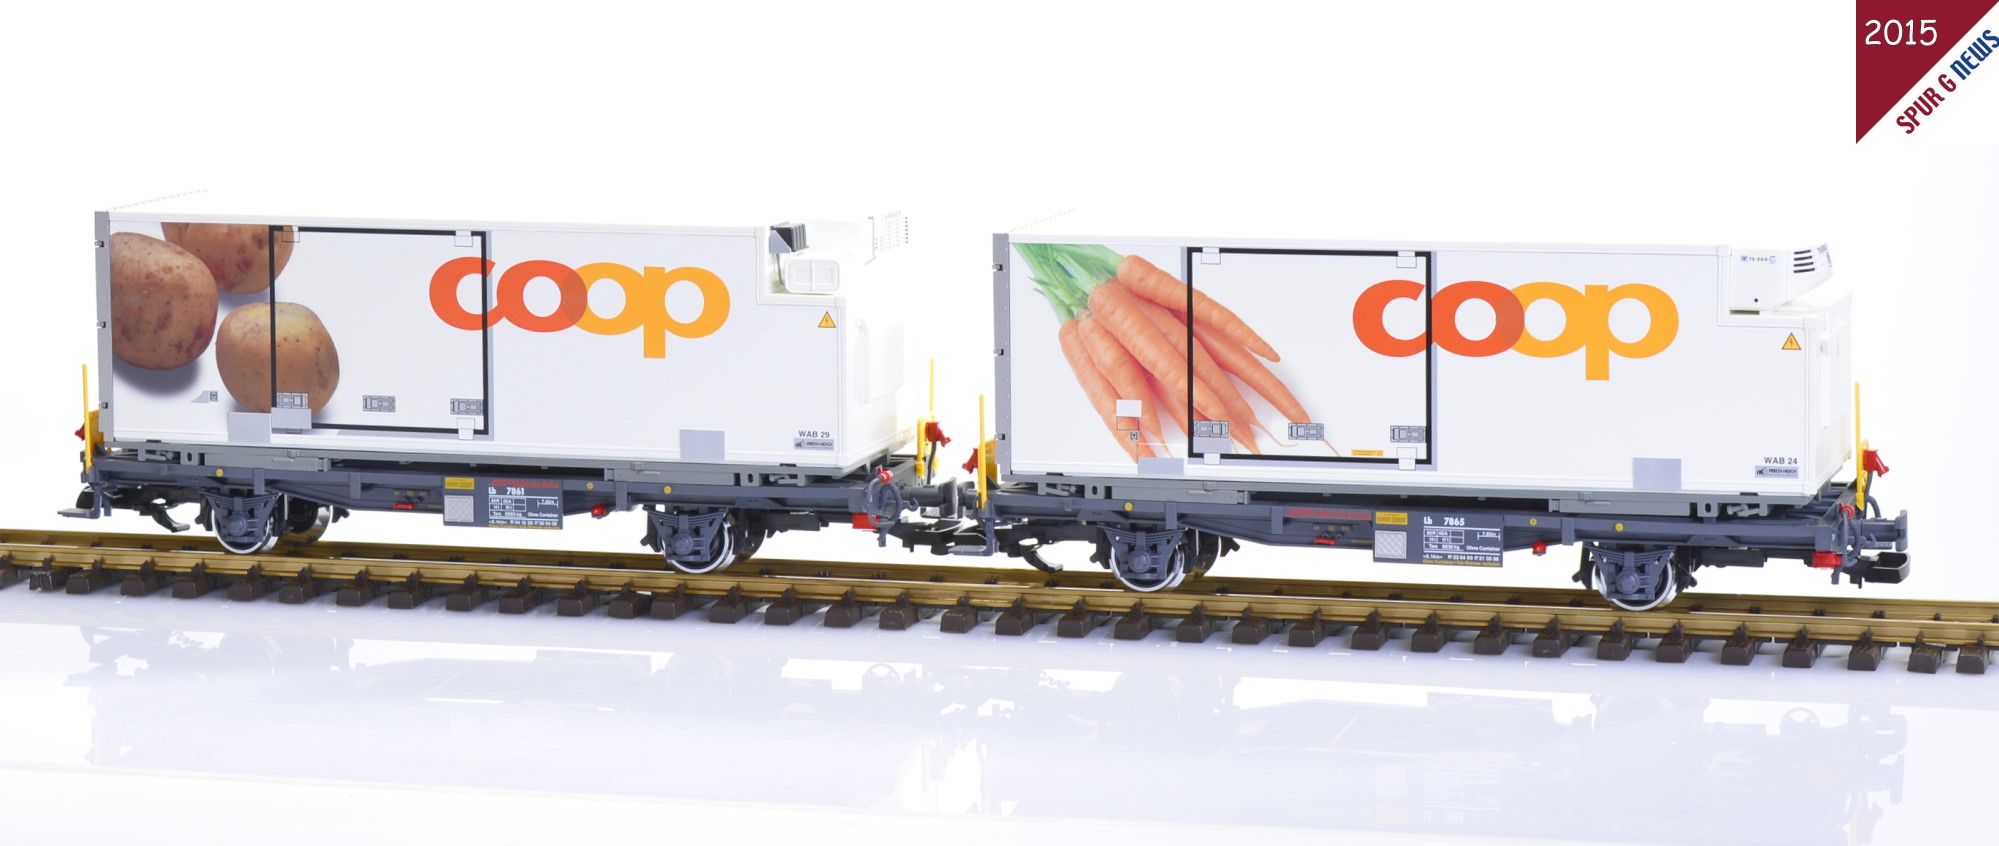 Neuheit von LGB 2015 - Containerwagen Set aus der coop Serie - Motiv: Kartoffeln und Gelbe Rben (Karotten)